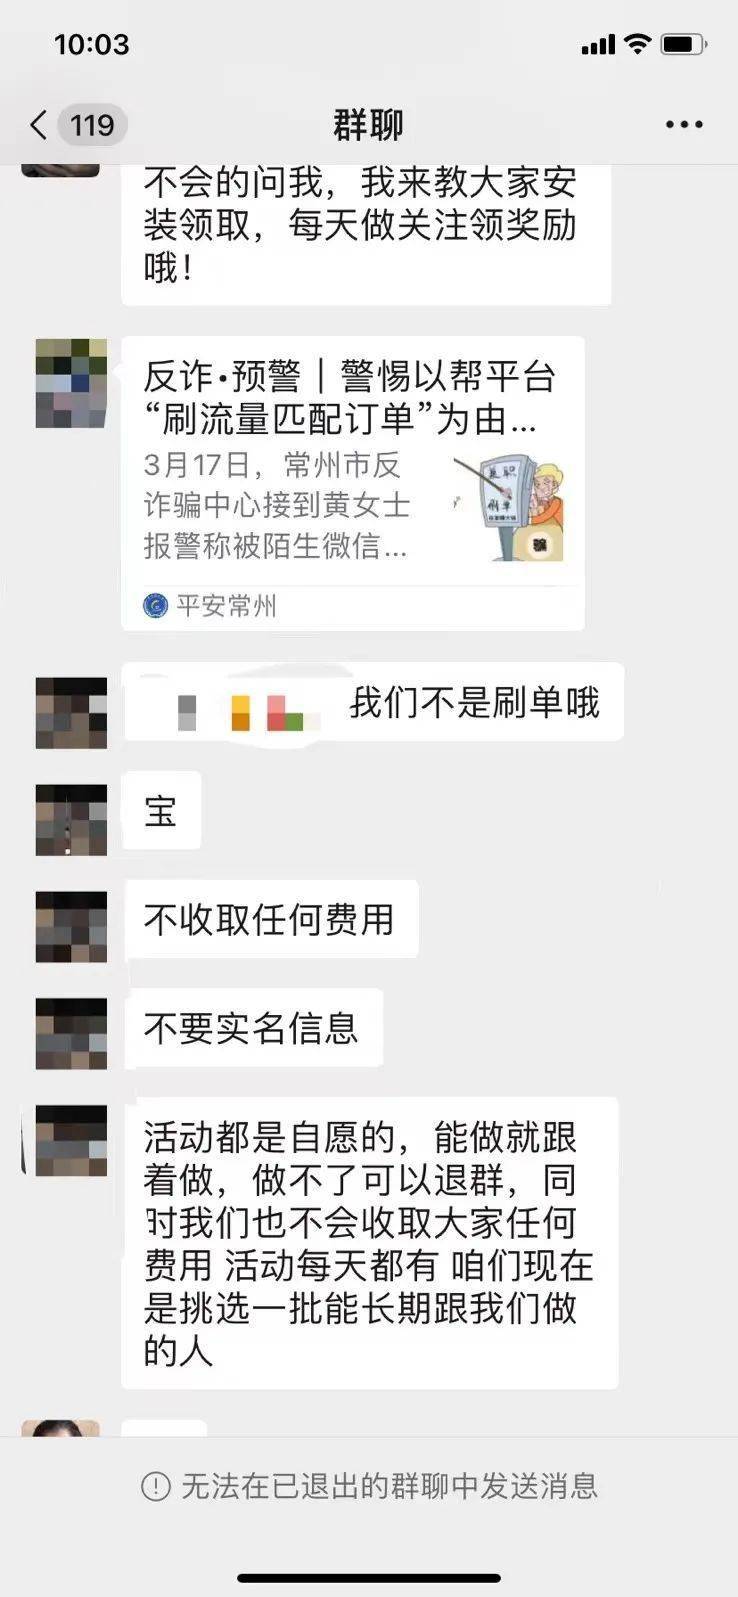 微信诈骗搜狐新闻_微信援交诈骗案例_微信公益诈骗